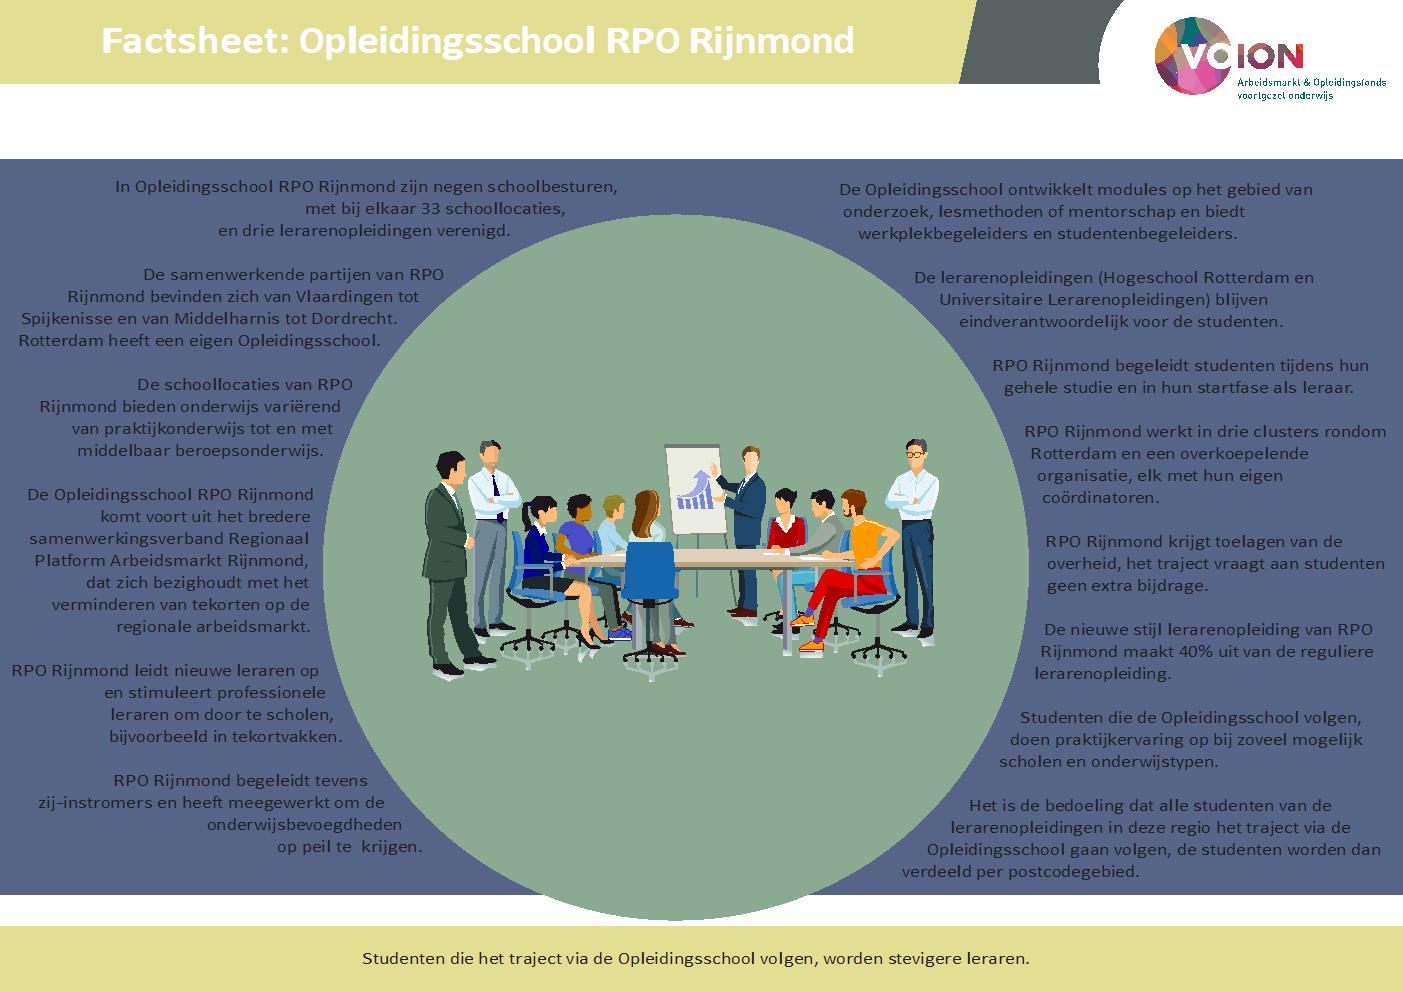 Factsheet Opleidingsschool RPO Rijnmond - Hoe ziet de opleidingsschool RPO Rijnmond eruit?